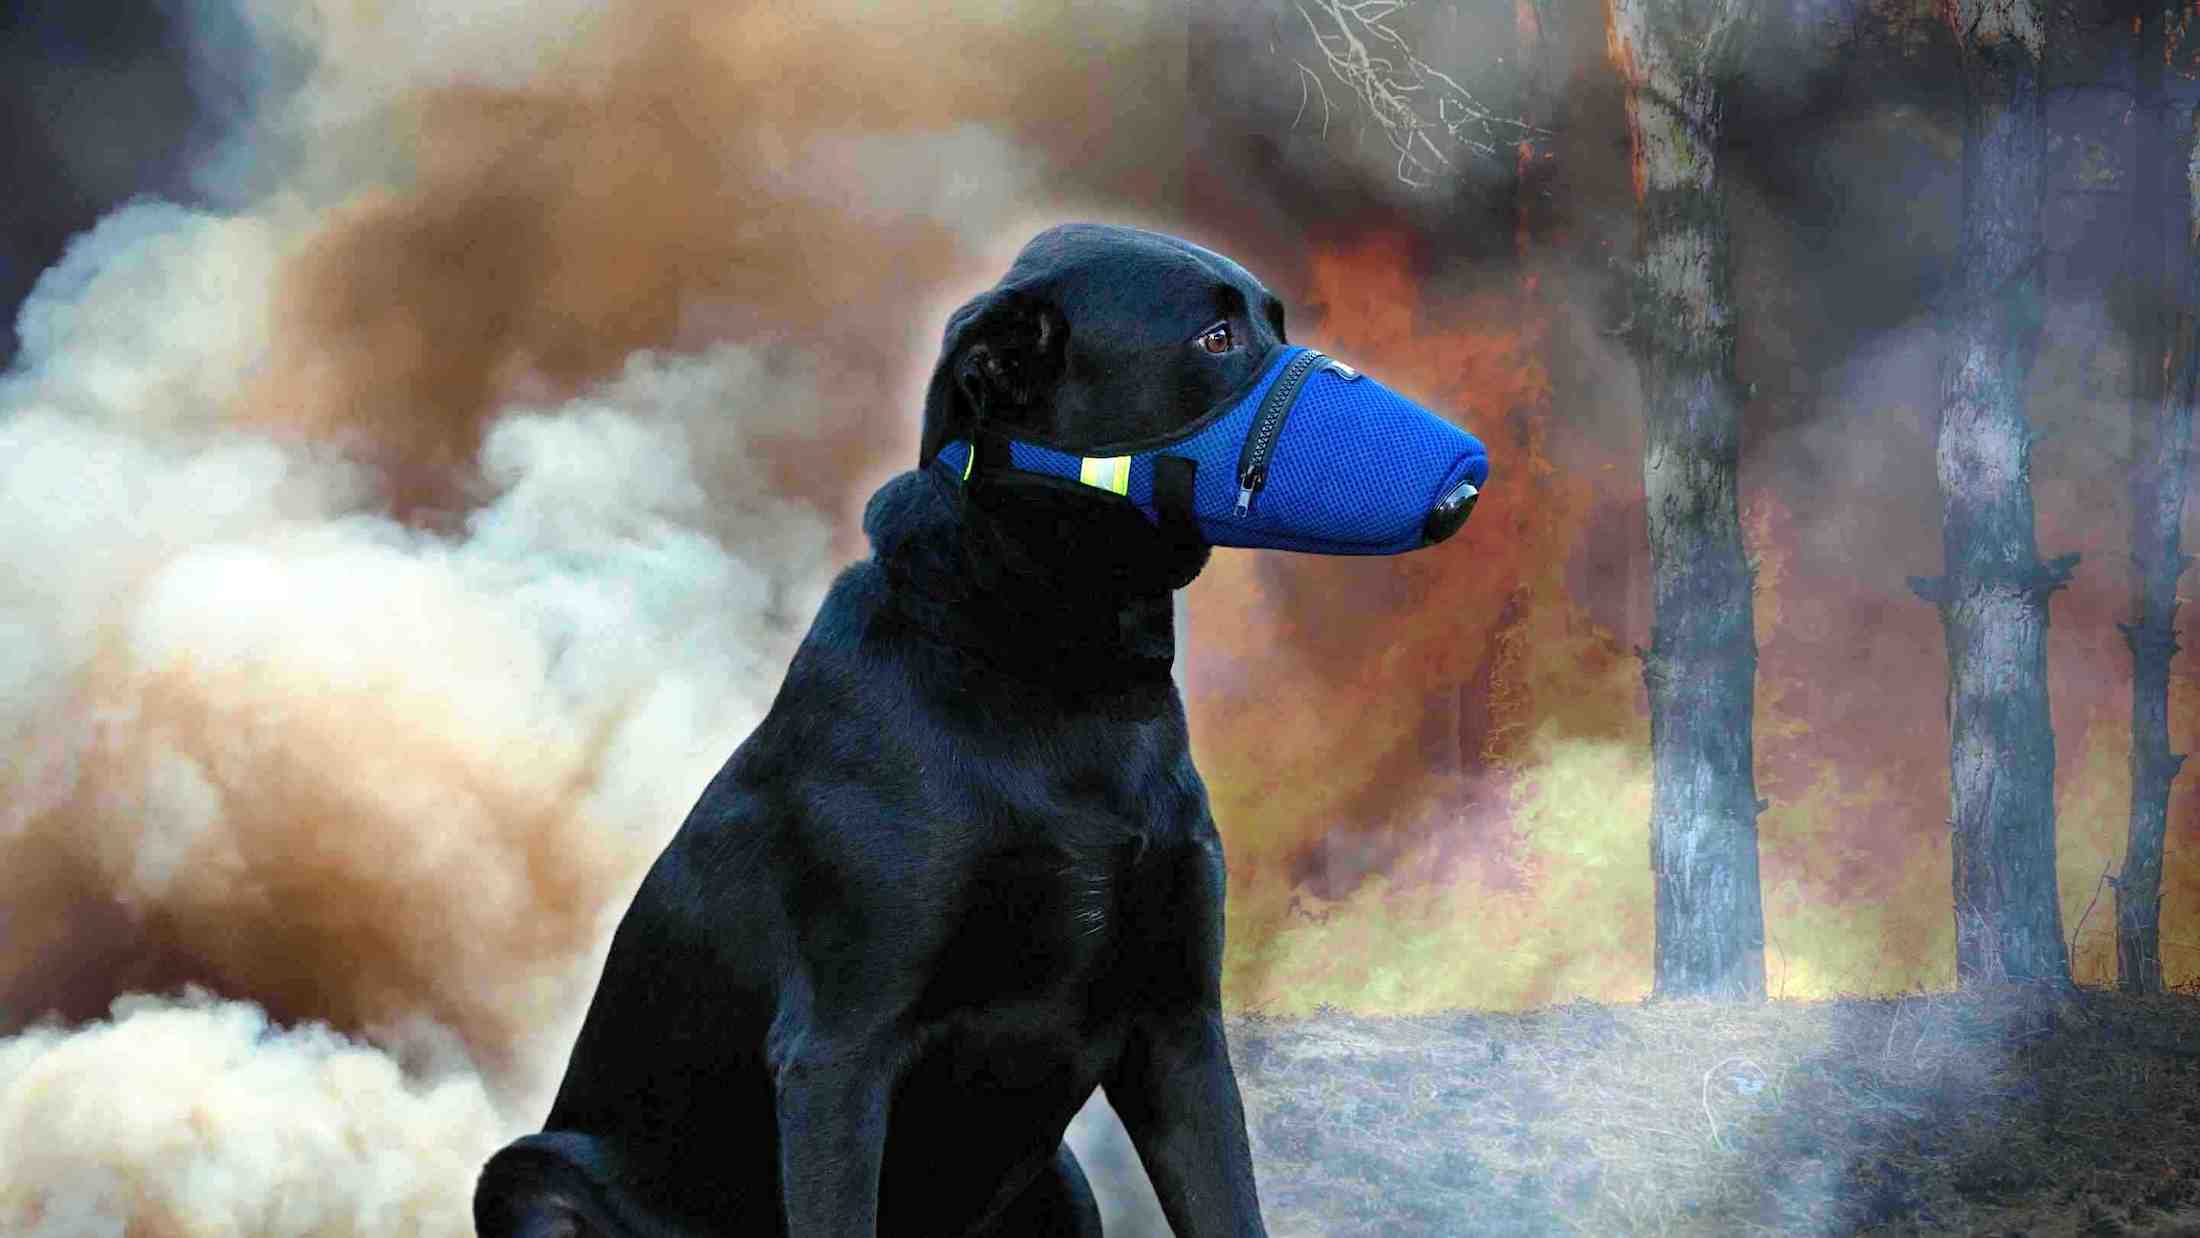 K9 Mask® Masque de filtre à air pour chien pour chiens pour fumée, poussière, cendres, pollen, gaz lacrymogène, marée rouge, produits chimiques, gaz lacrymogène, bactéries, allergènes